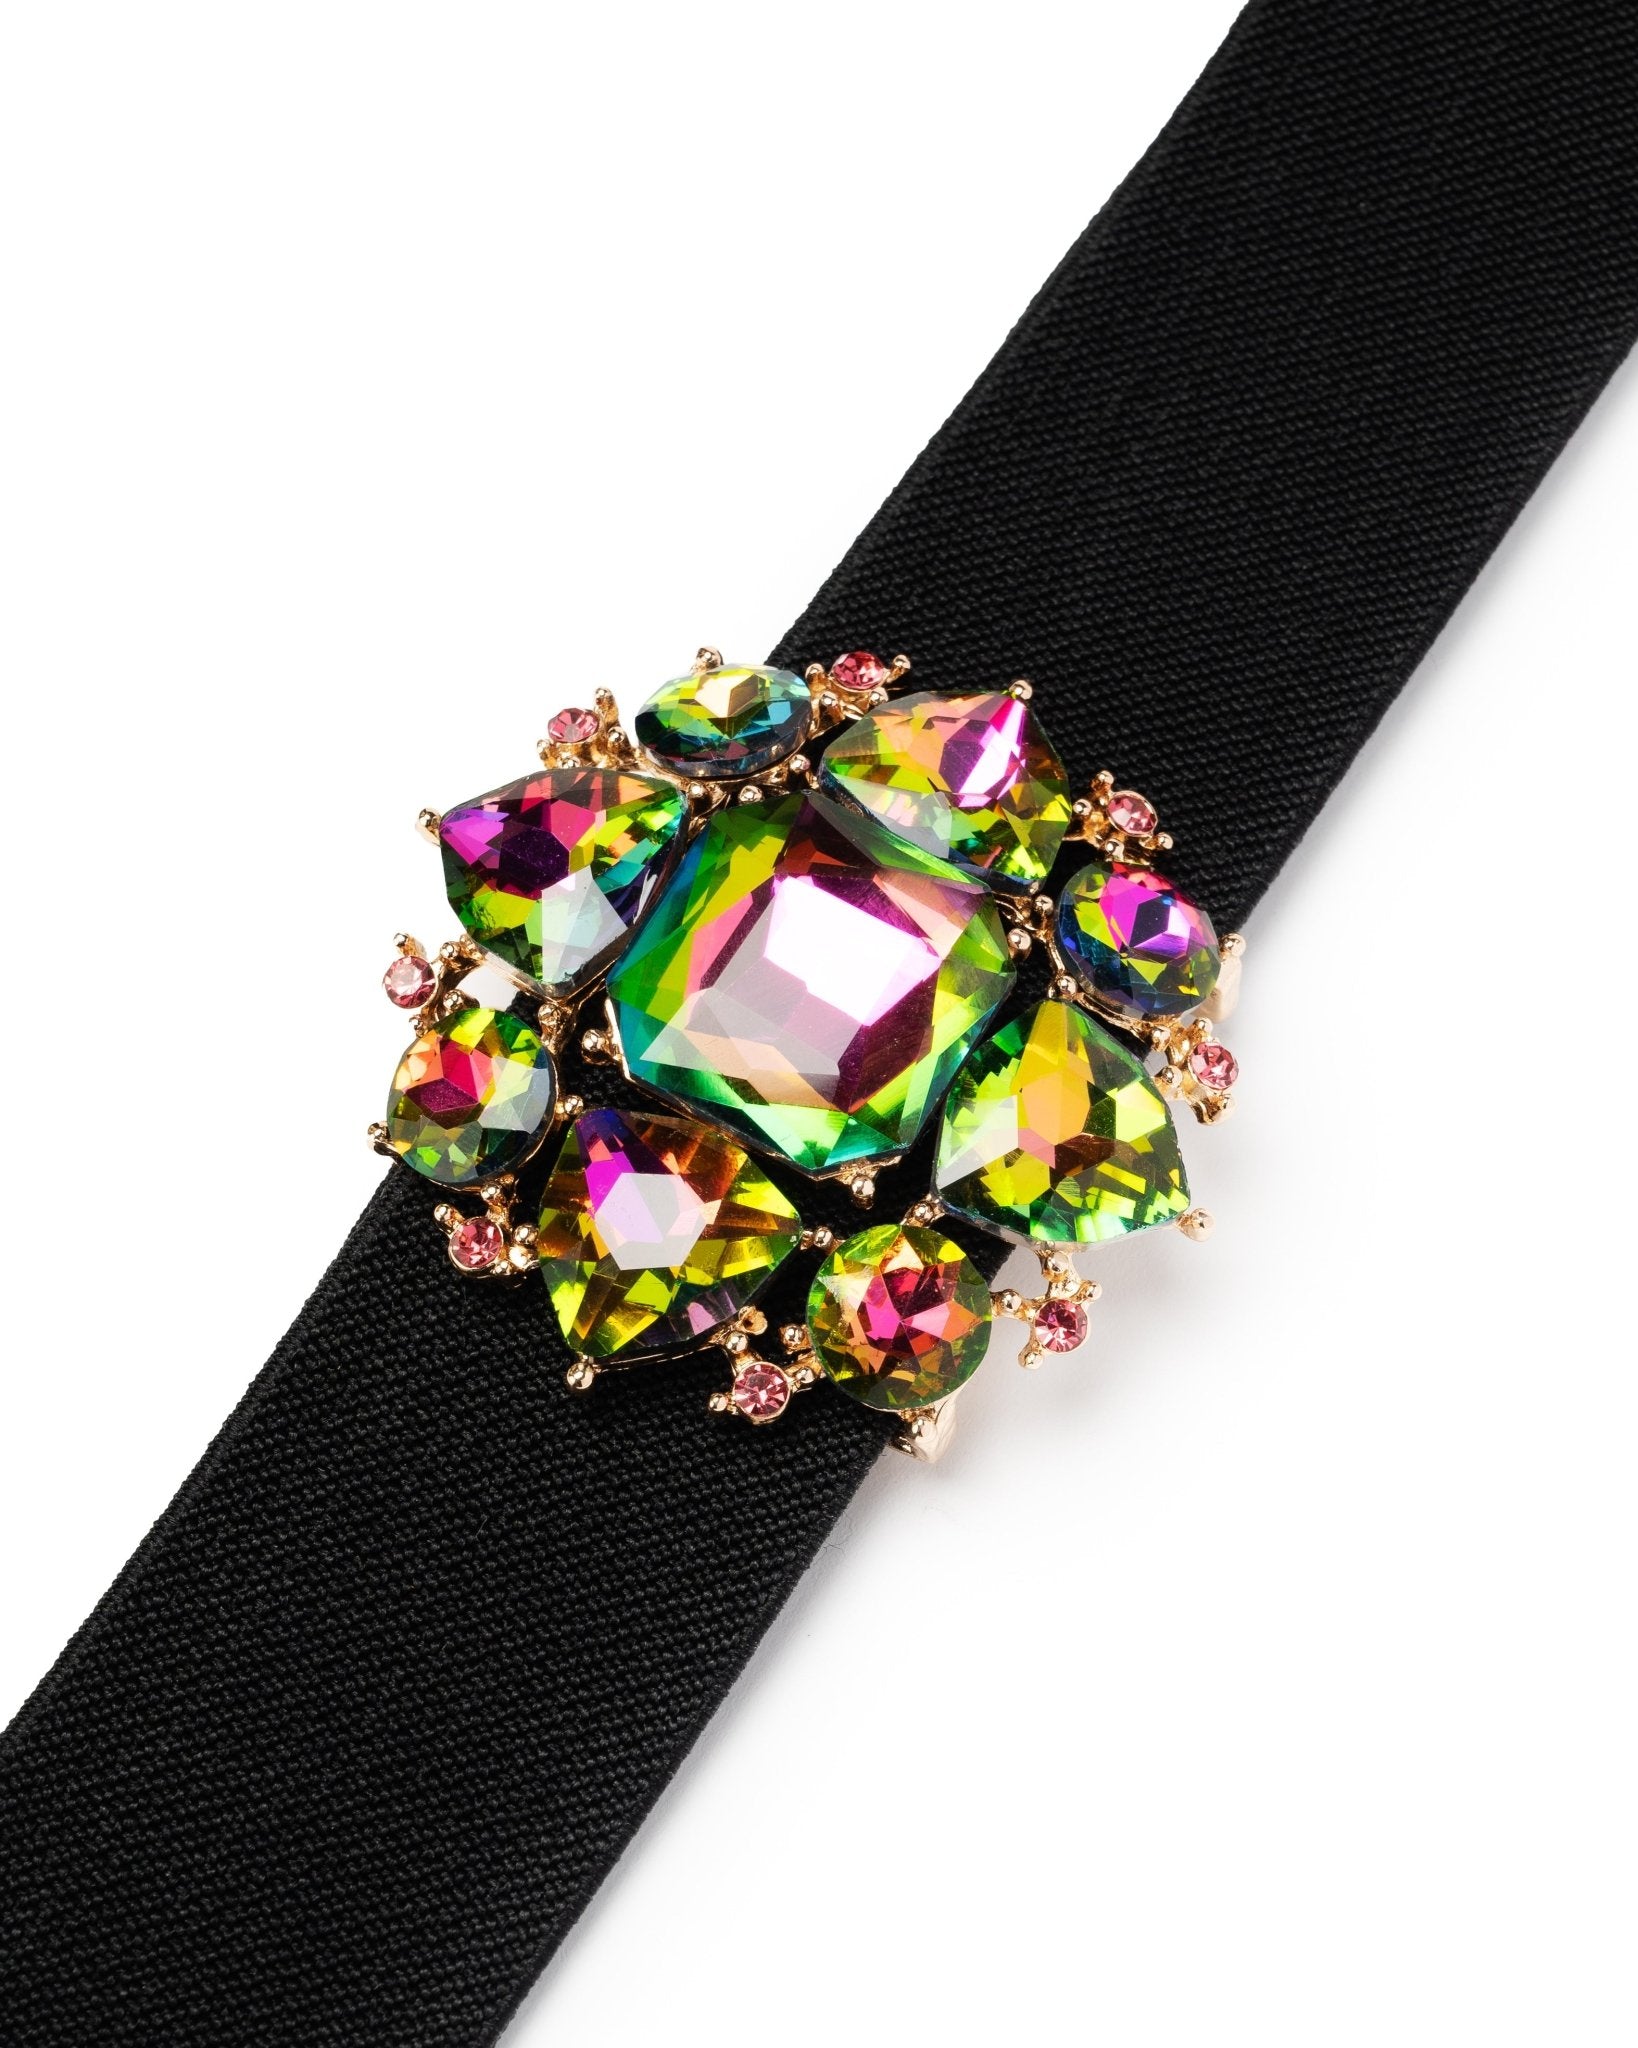 Cintura elastica nera, con fiore in vetro verde - Mya Accessories